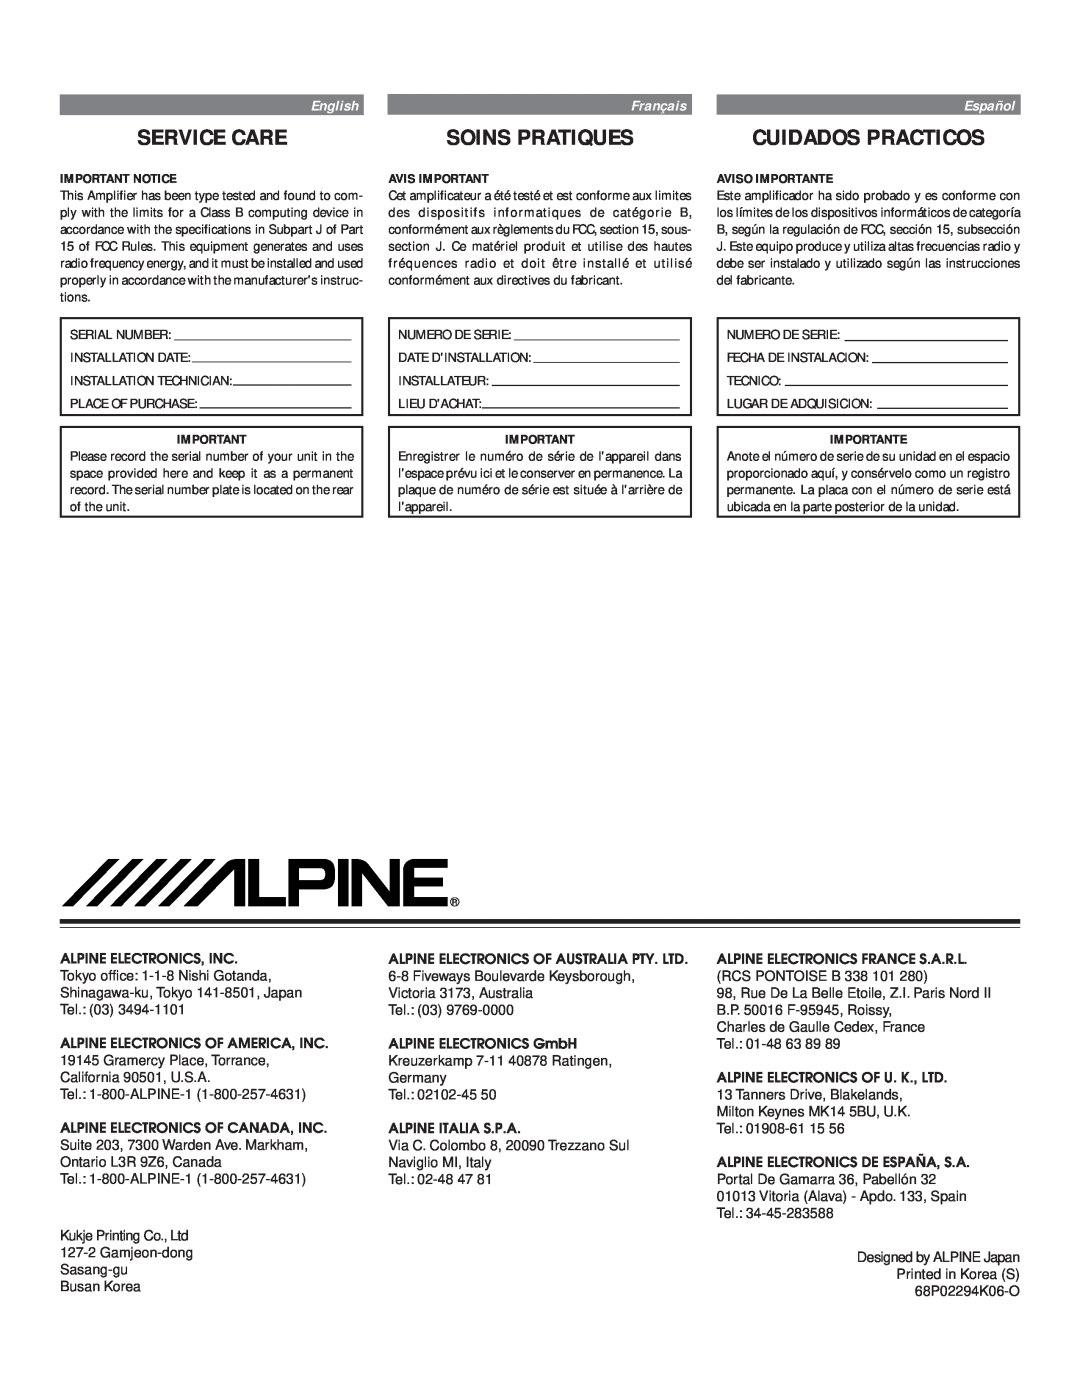 Alpine MRV-F450, MRV-F540, MRV-F340 Service Care, Soins Pratiques, Cuidados Practicos, English, Français, Español 